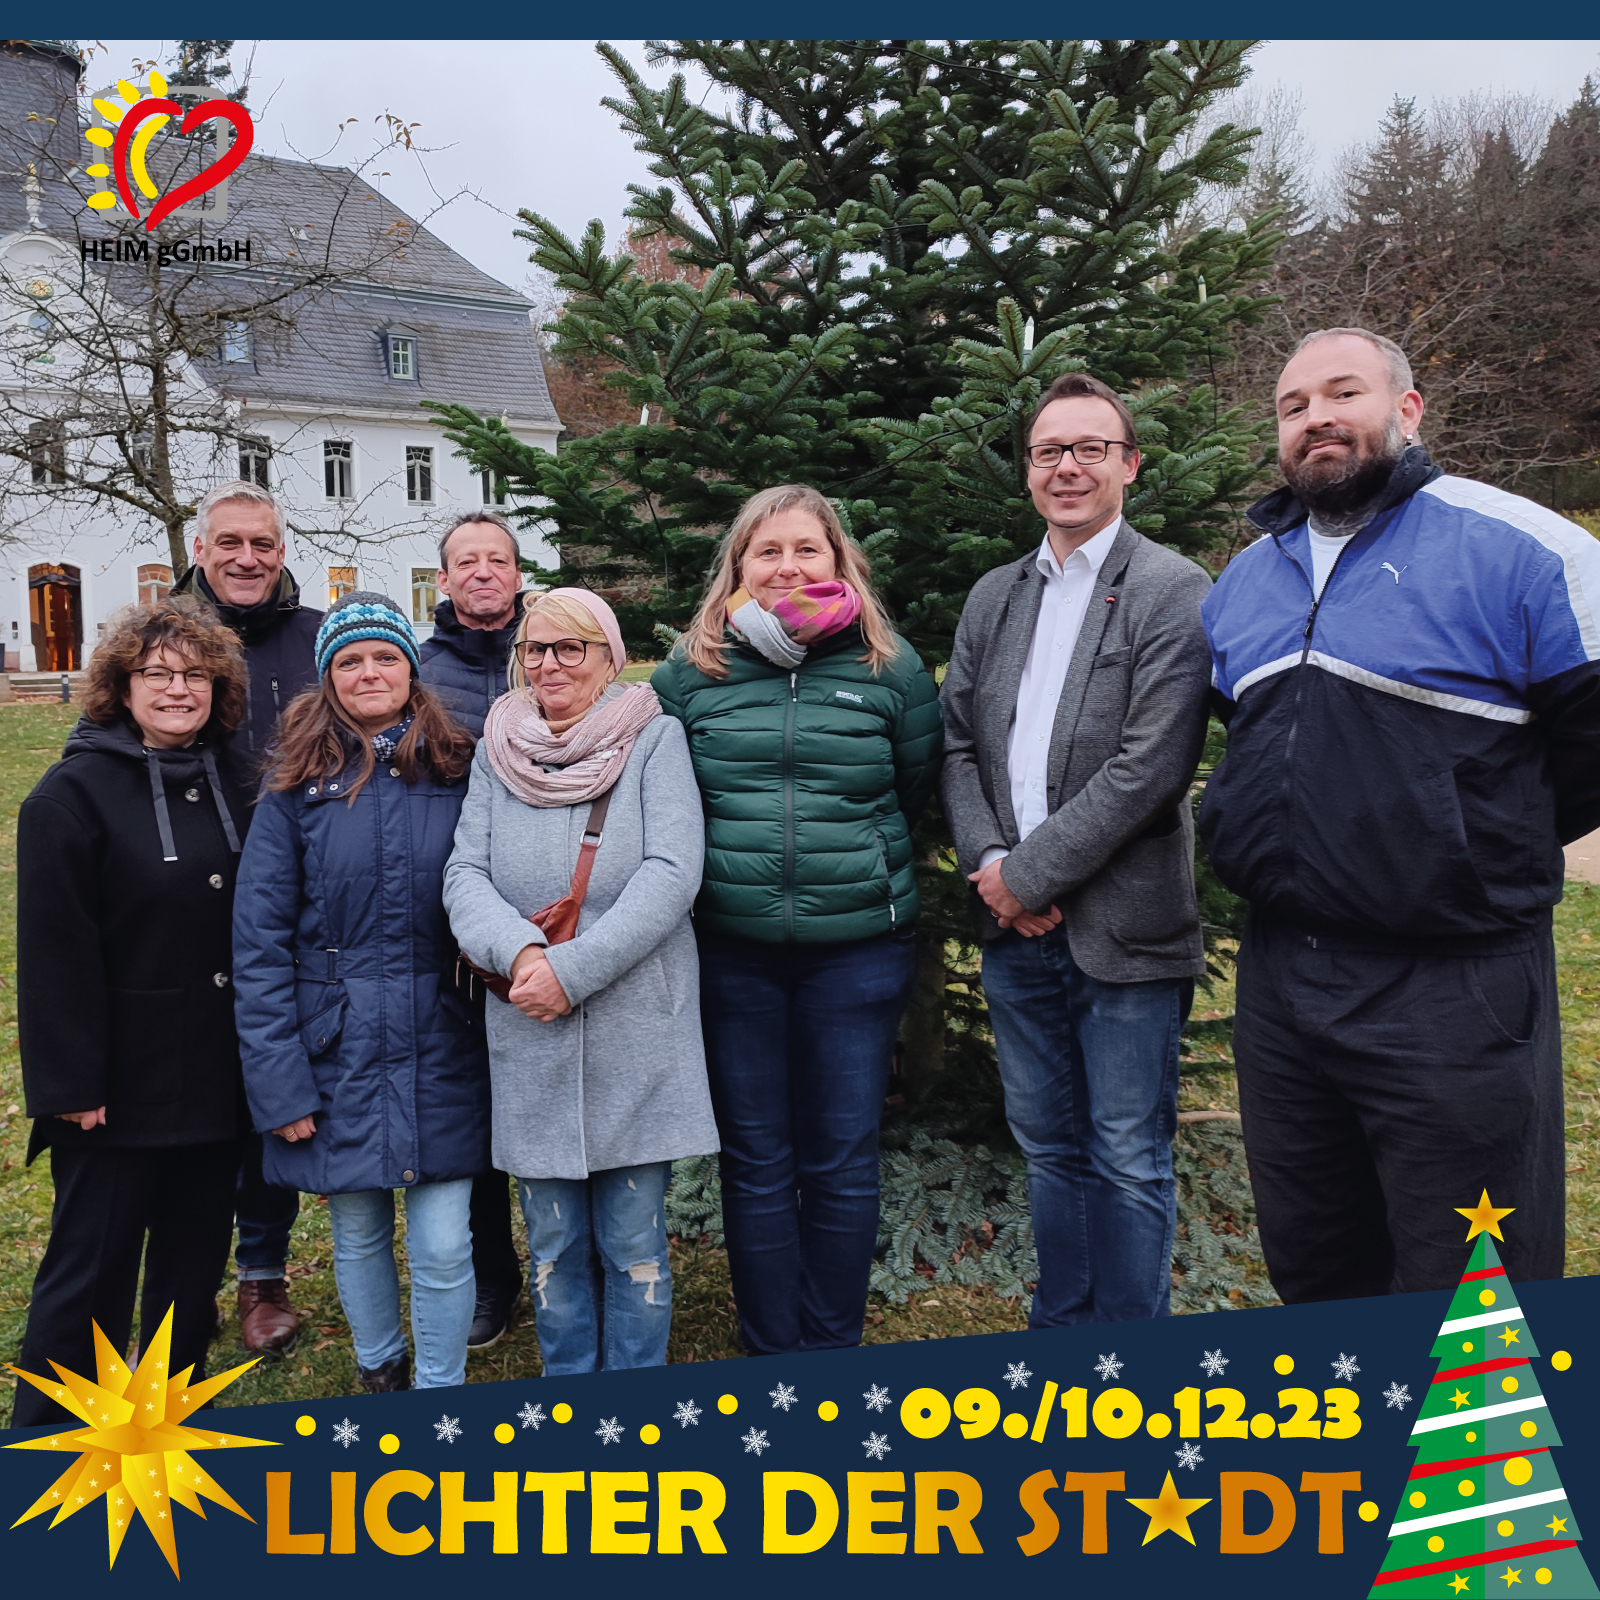 Der gemeinsame Weihnachtsmarkt „Lichter der Stadt“ des Hotels Schloss Rabenstein und der HEIM gemeinnützige GmbH am 9. und 10. Dezember soll ein voller Erfolg werden.